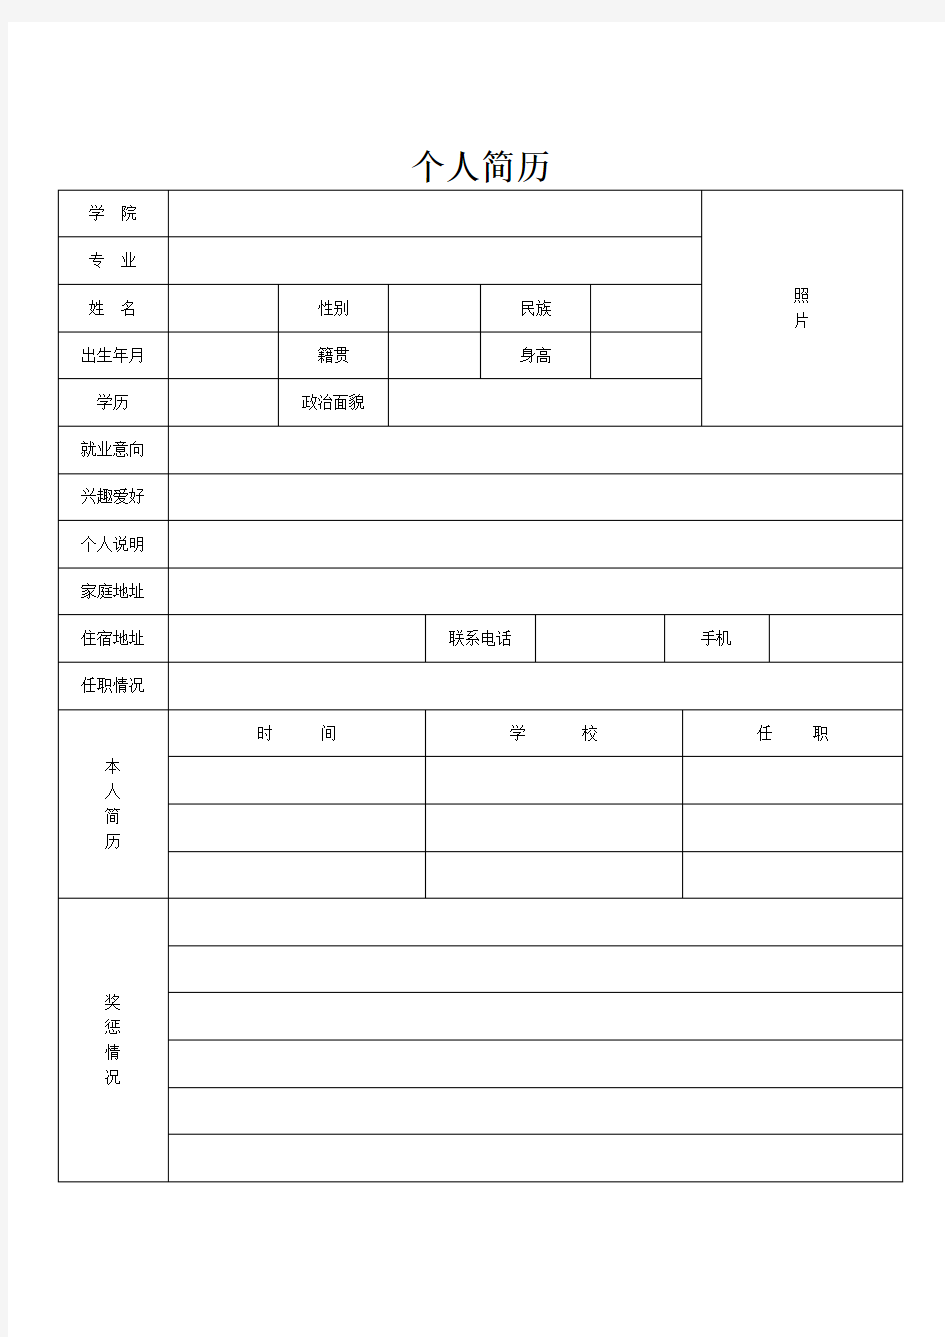 中英文双语版简历模板